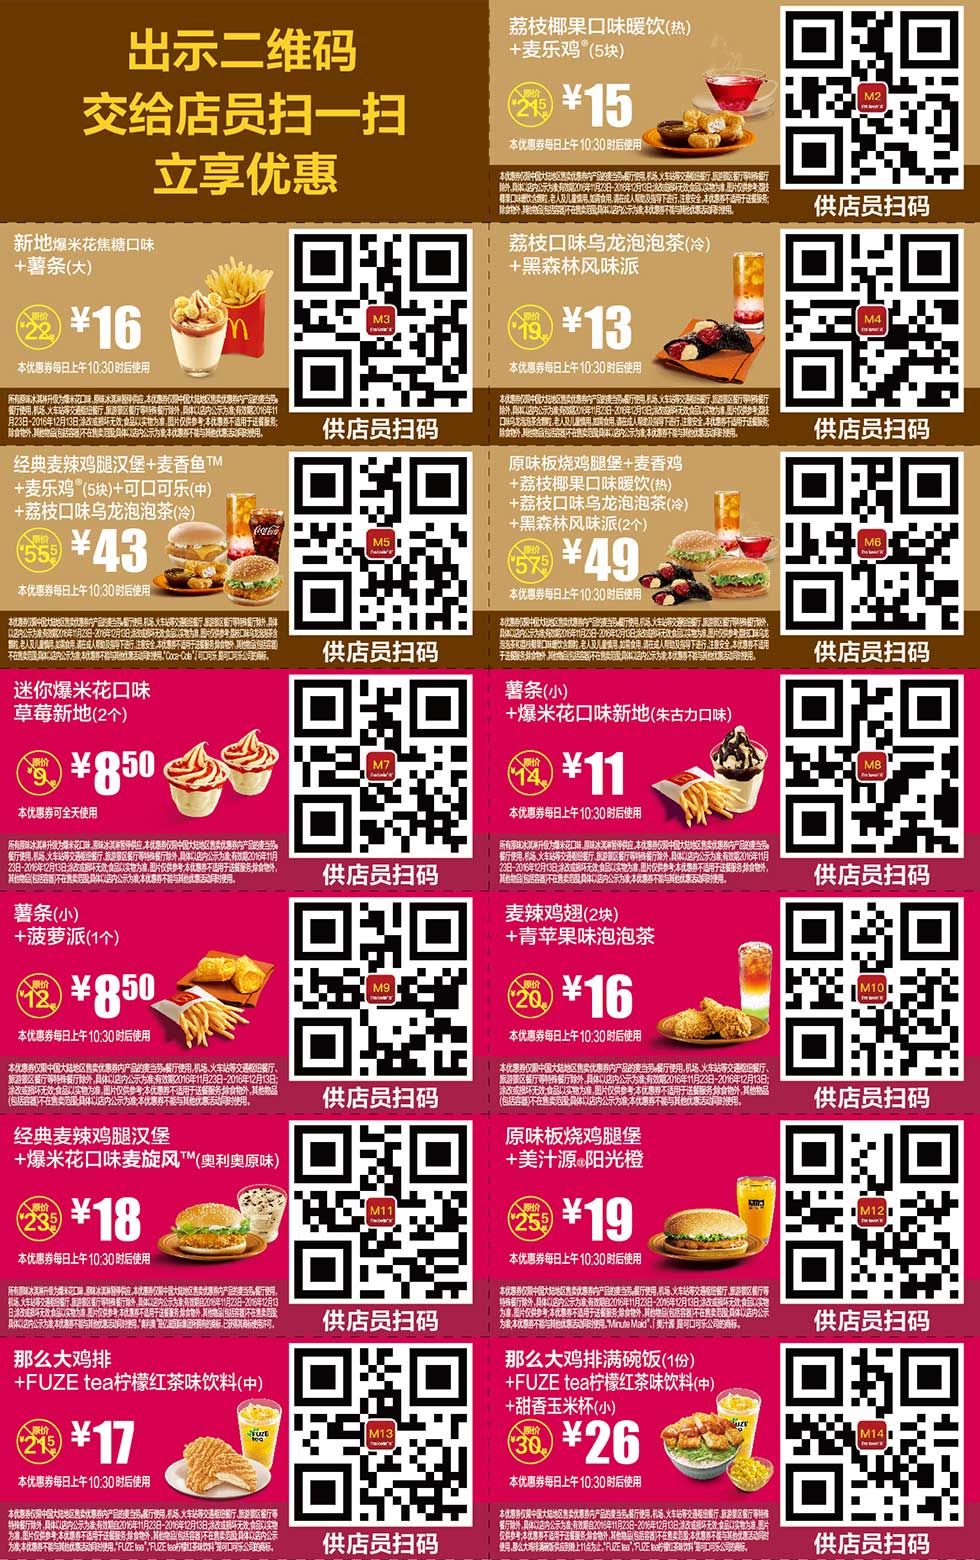 优惠券图片:麦当劳优惠券2016年11月12月手机版整张版本，手机出示券码享受M记优惠 有效期2016年11月23日-2016年12月13日